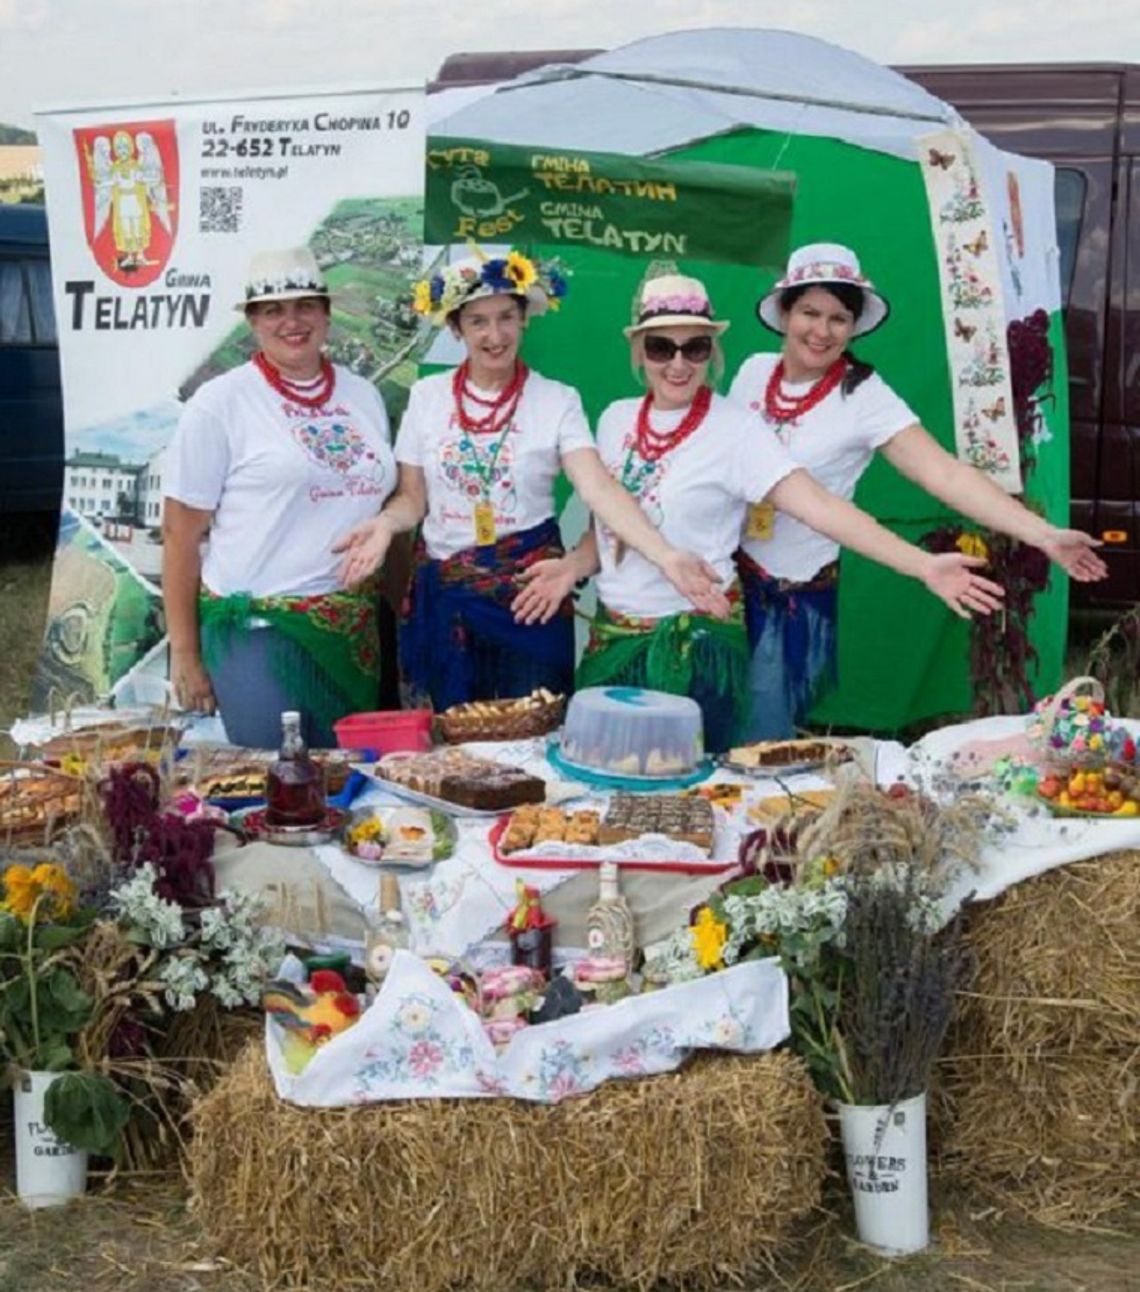 Smaki z Telatyna na ukraińskim festiwalu